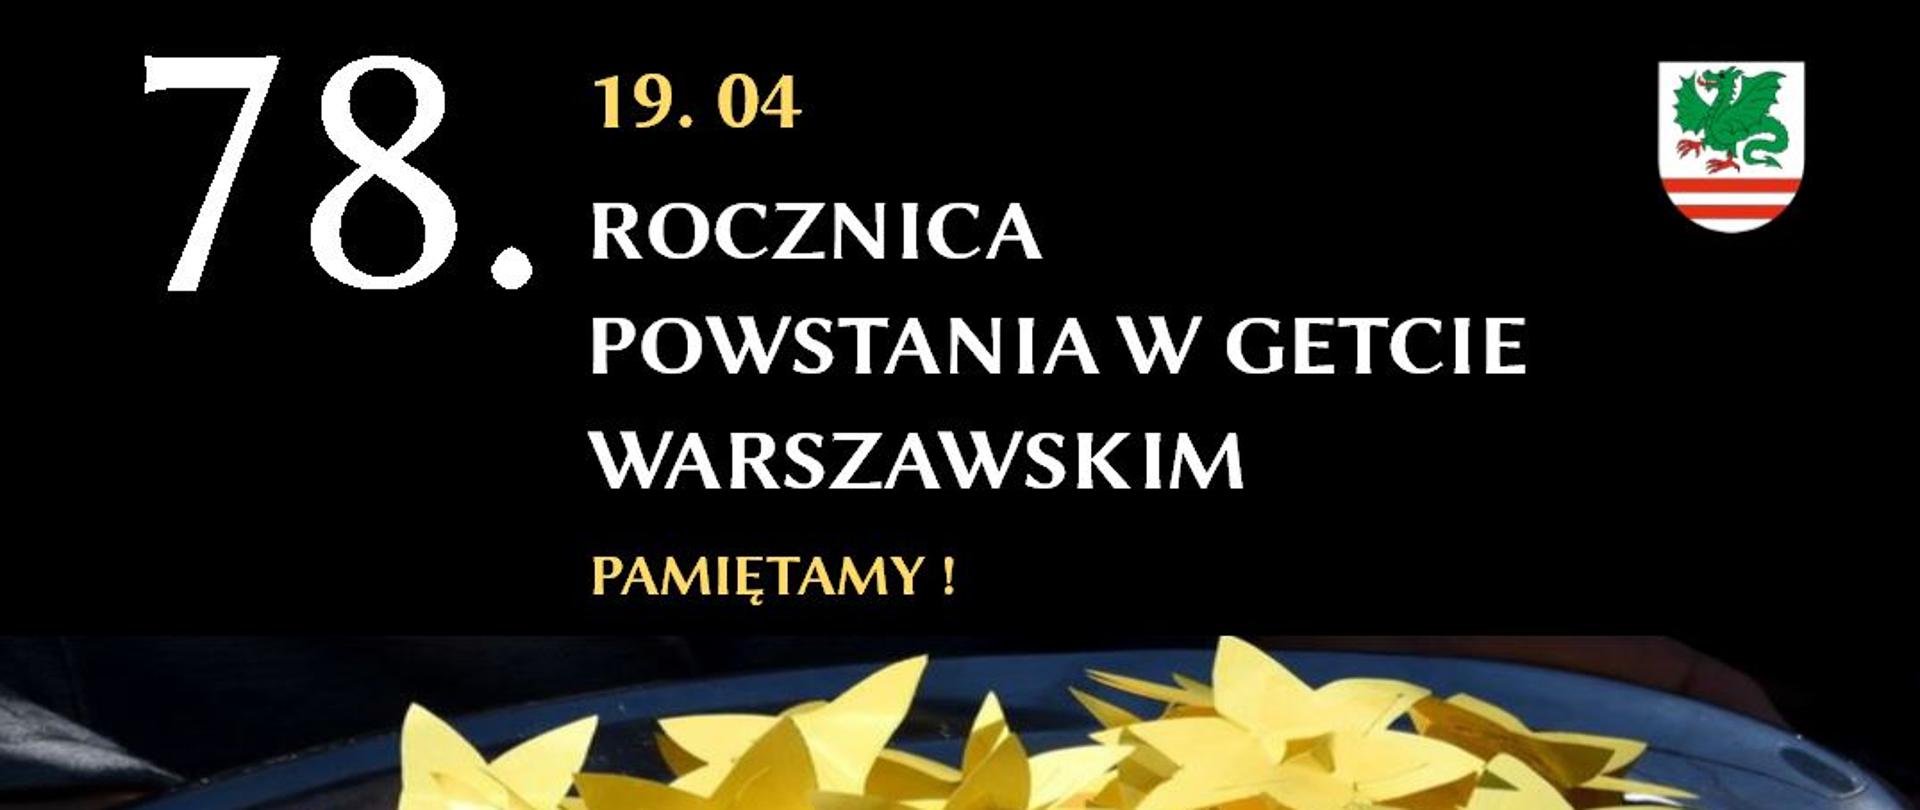 78 rocznica powstania w Getcie Warszawskim